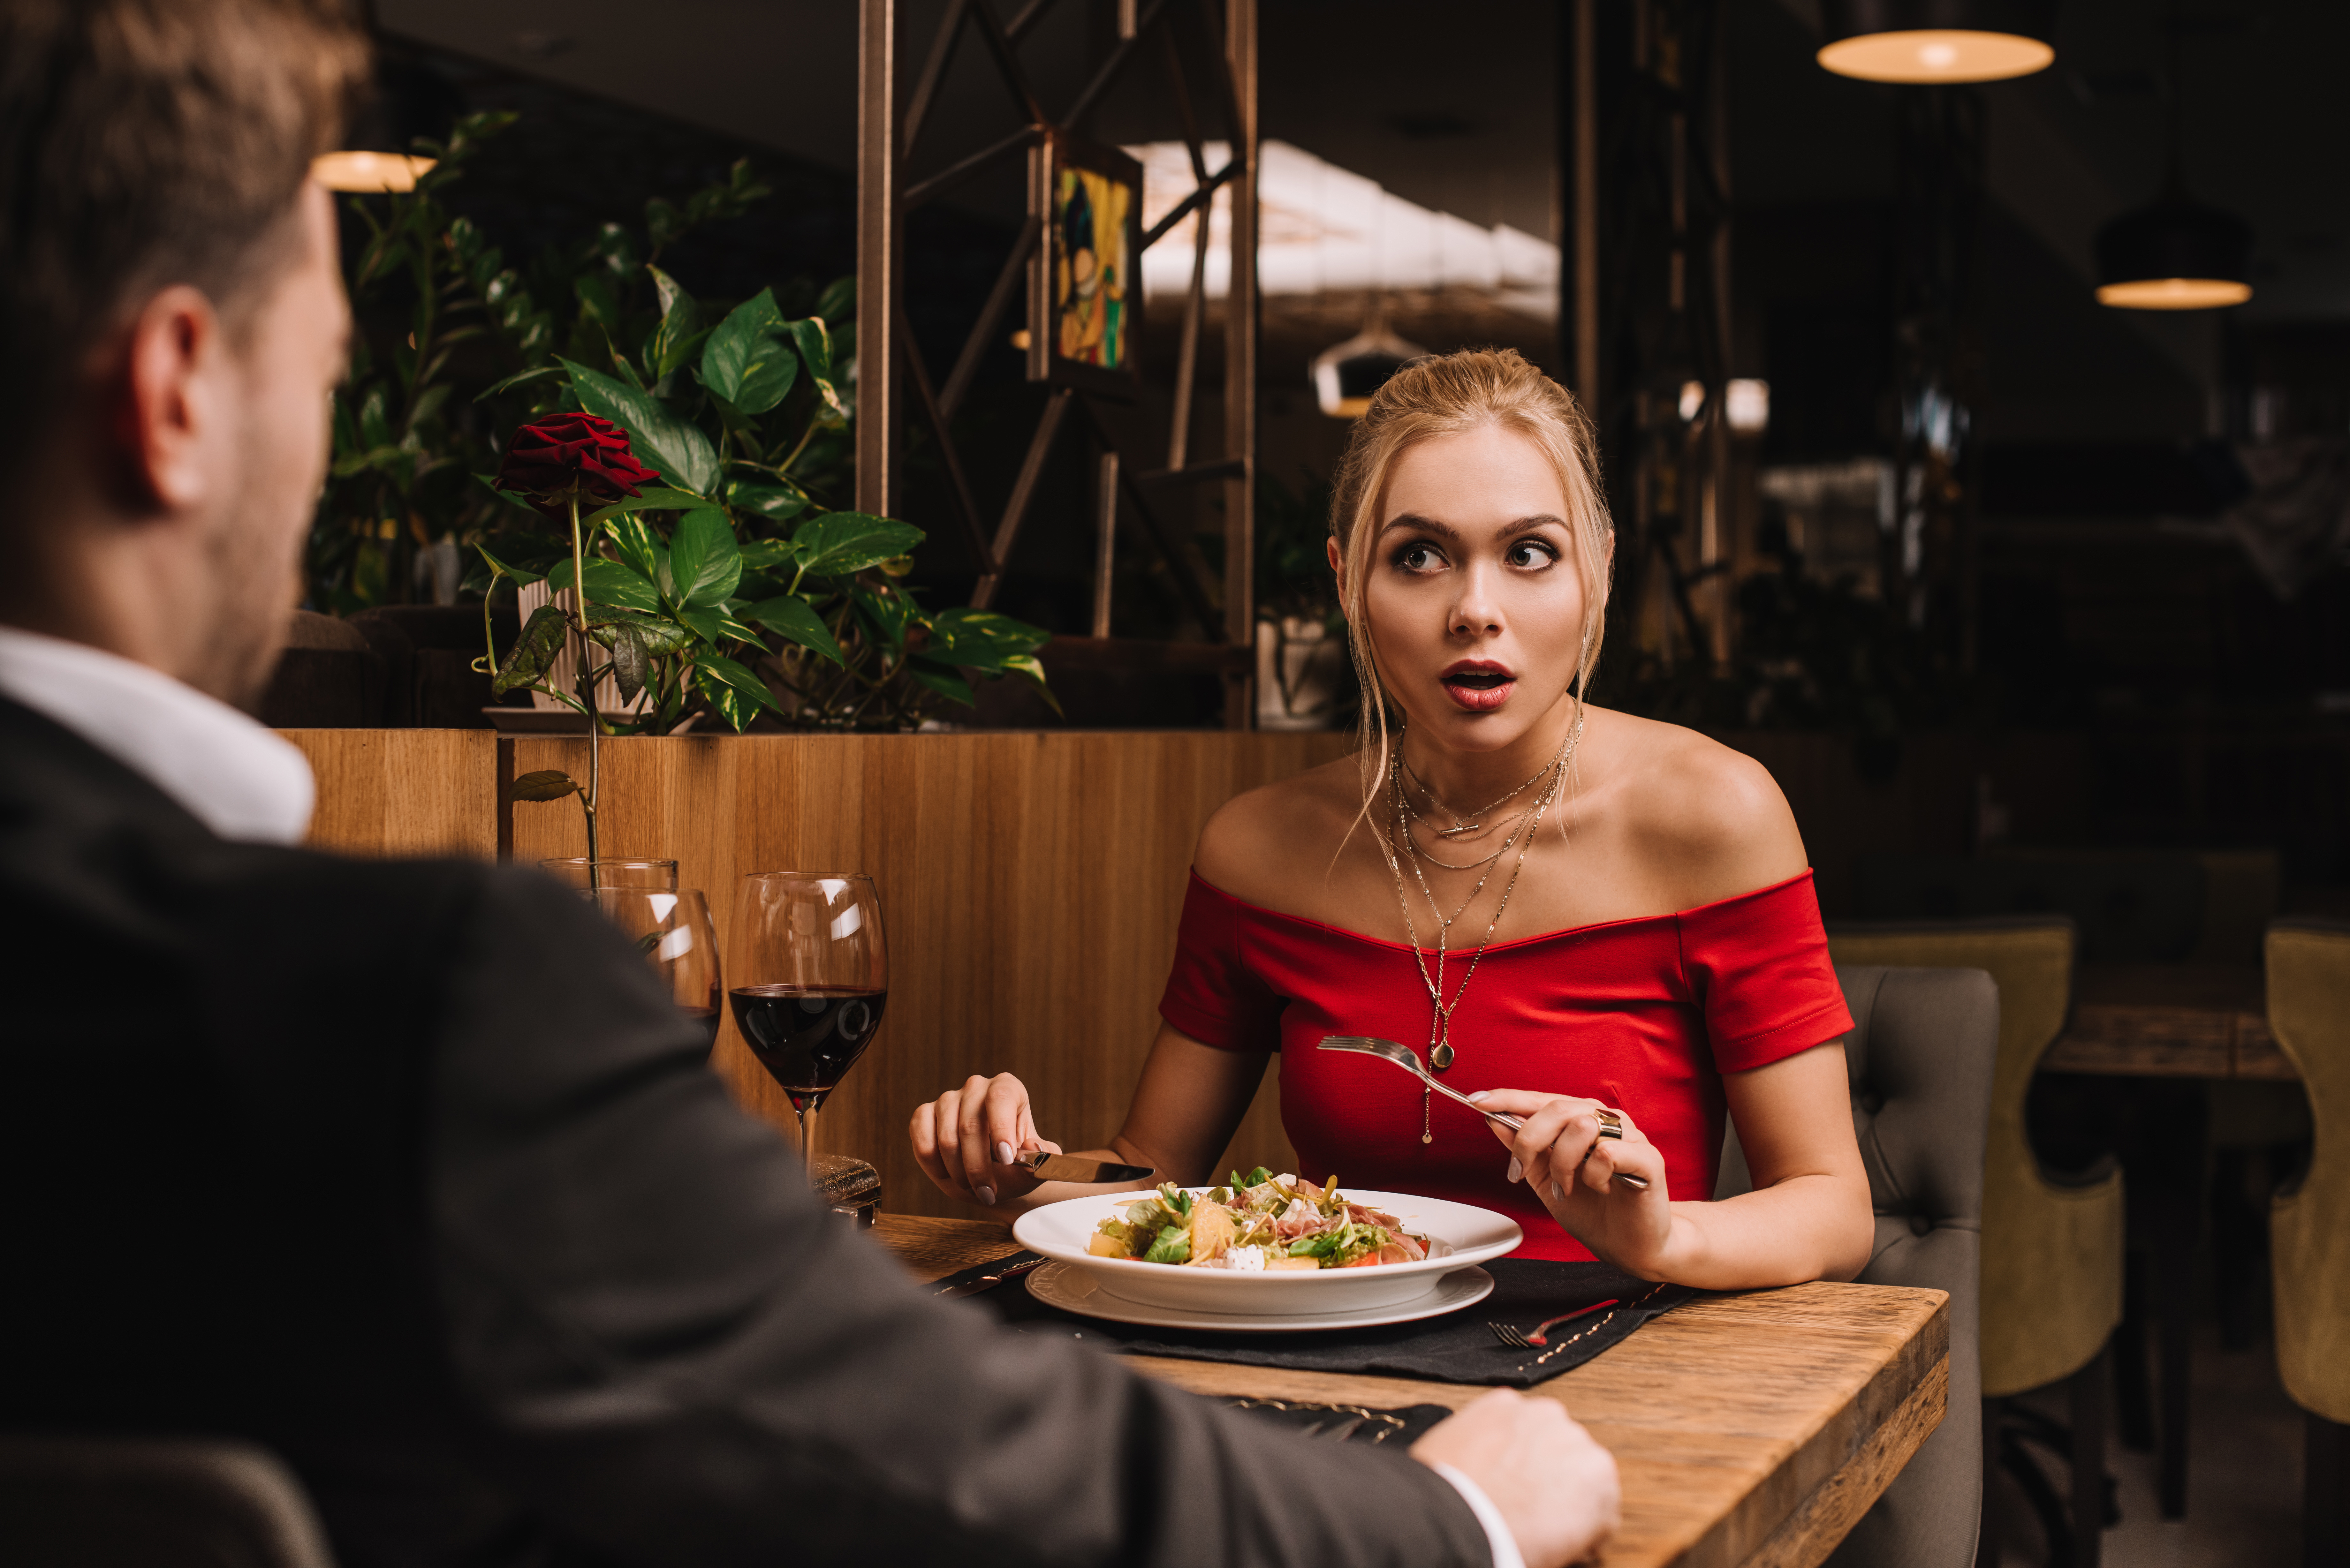 Une jeune femme regarde l'homme en état de choc pendant le dîner | Source : Shutterstock